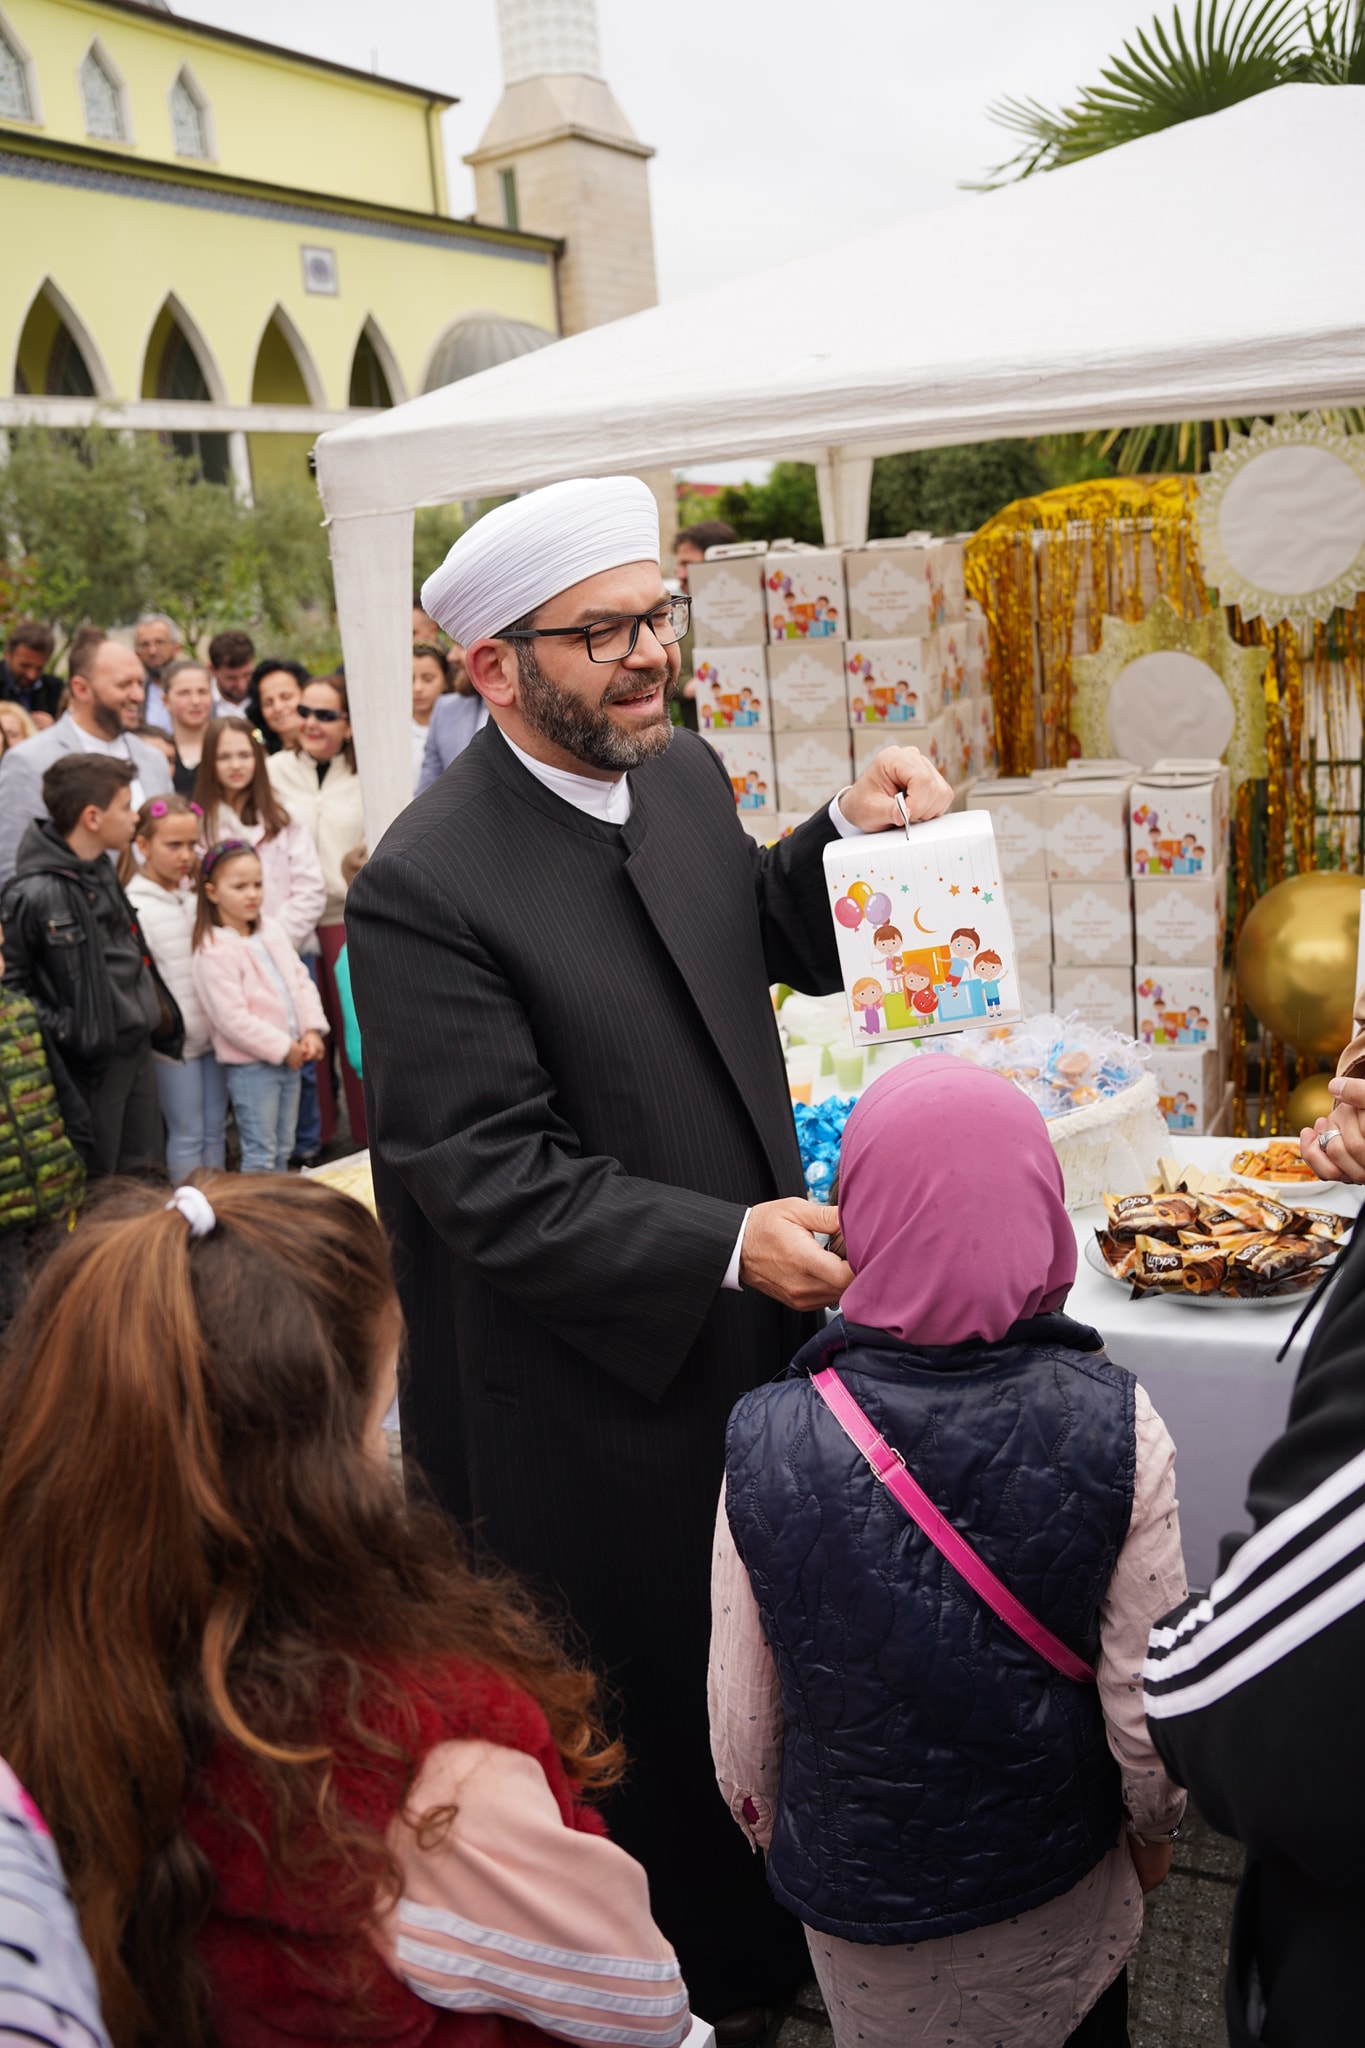 “Të festojmë së bashku Bajramin” – aktivitet festiv me fëmijët me rastin e Fitër Bajramit